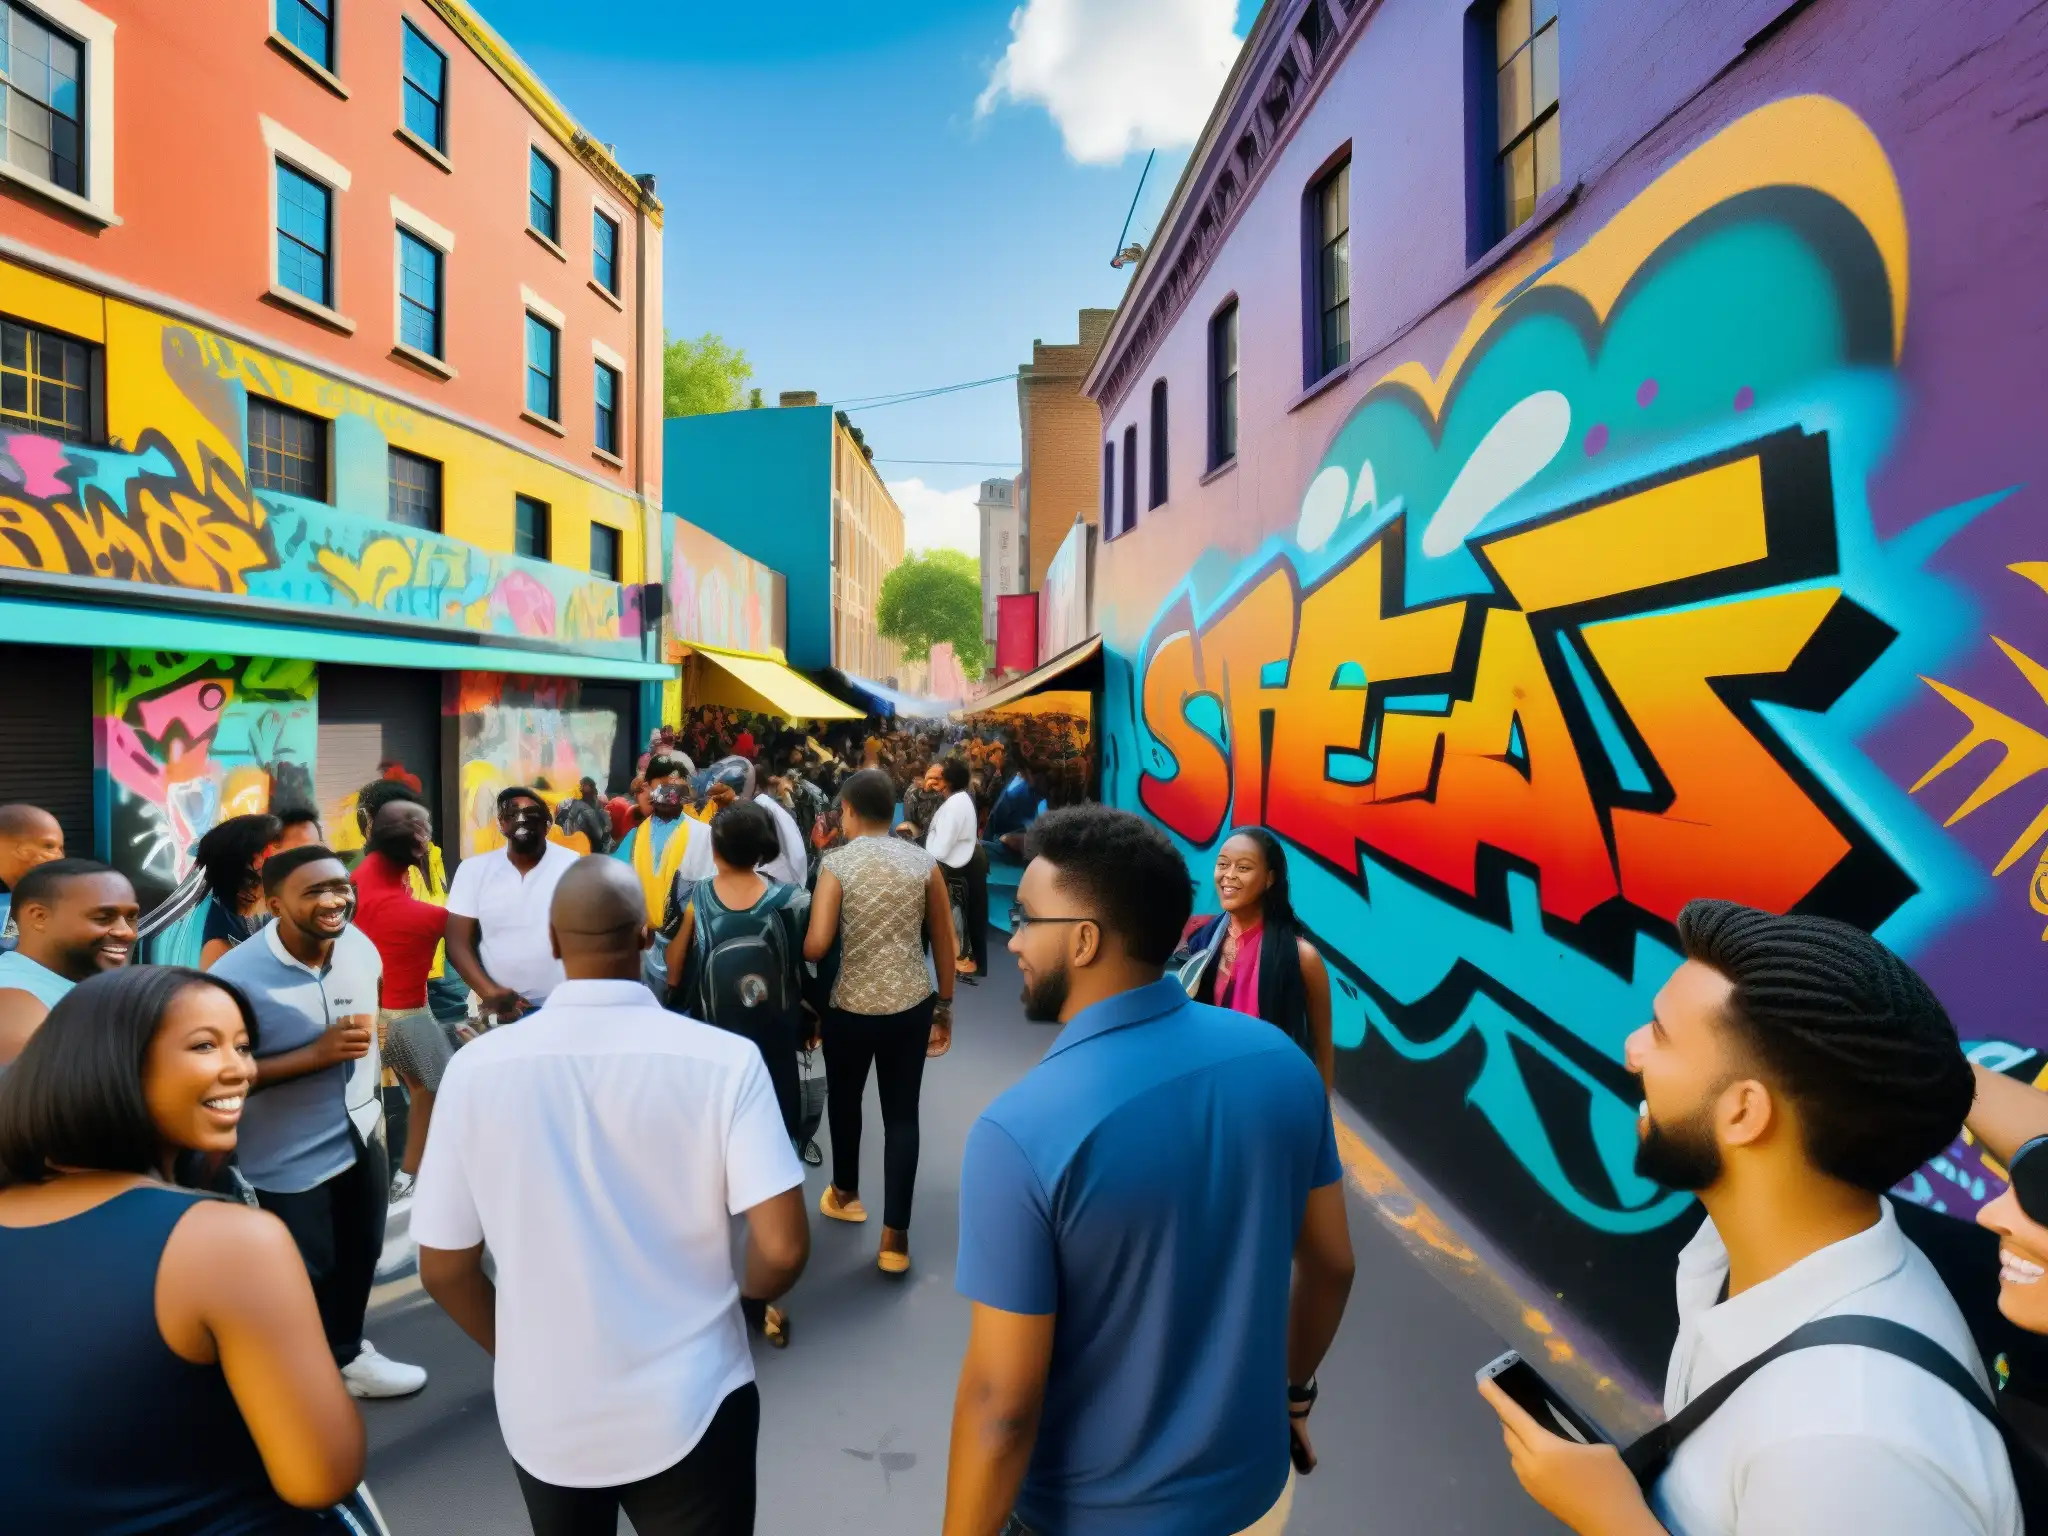 Un bullicioso y colorido escenario urbano donde la gente comparte leyendas urbanas, creando una atmósfera vibrante y llena de energía